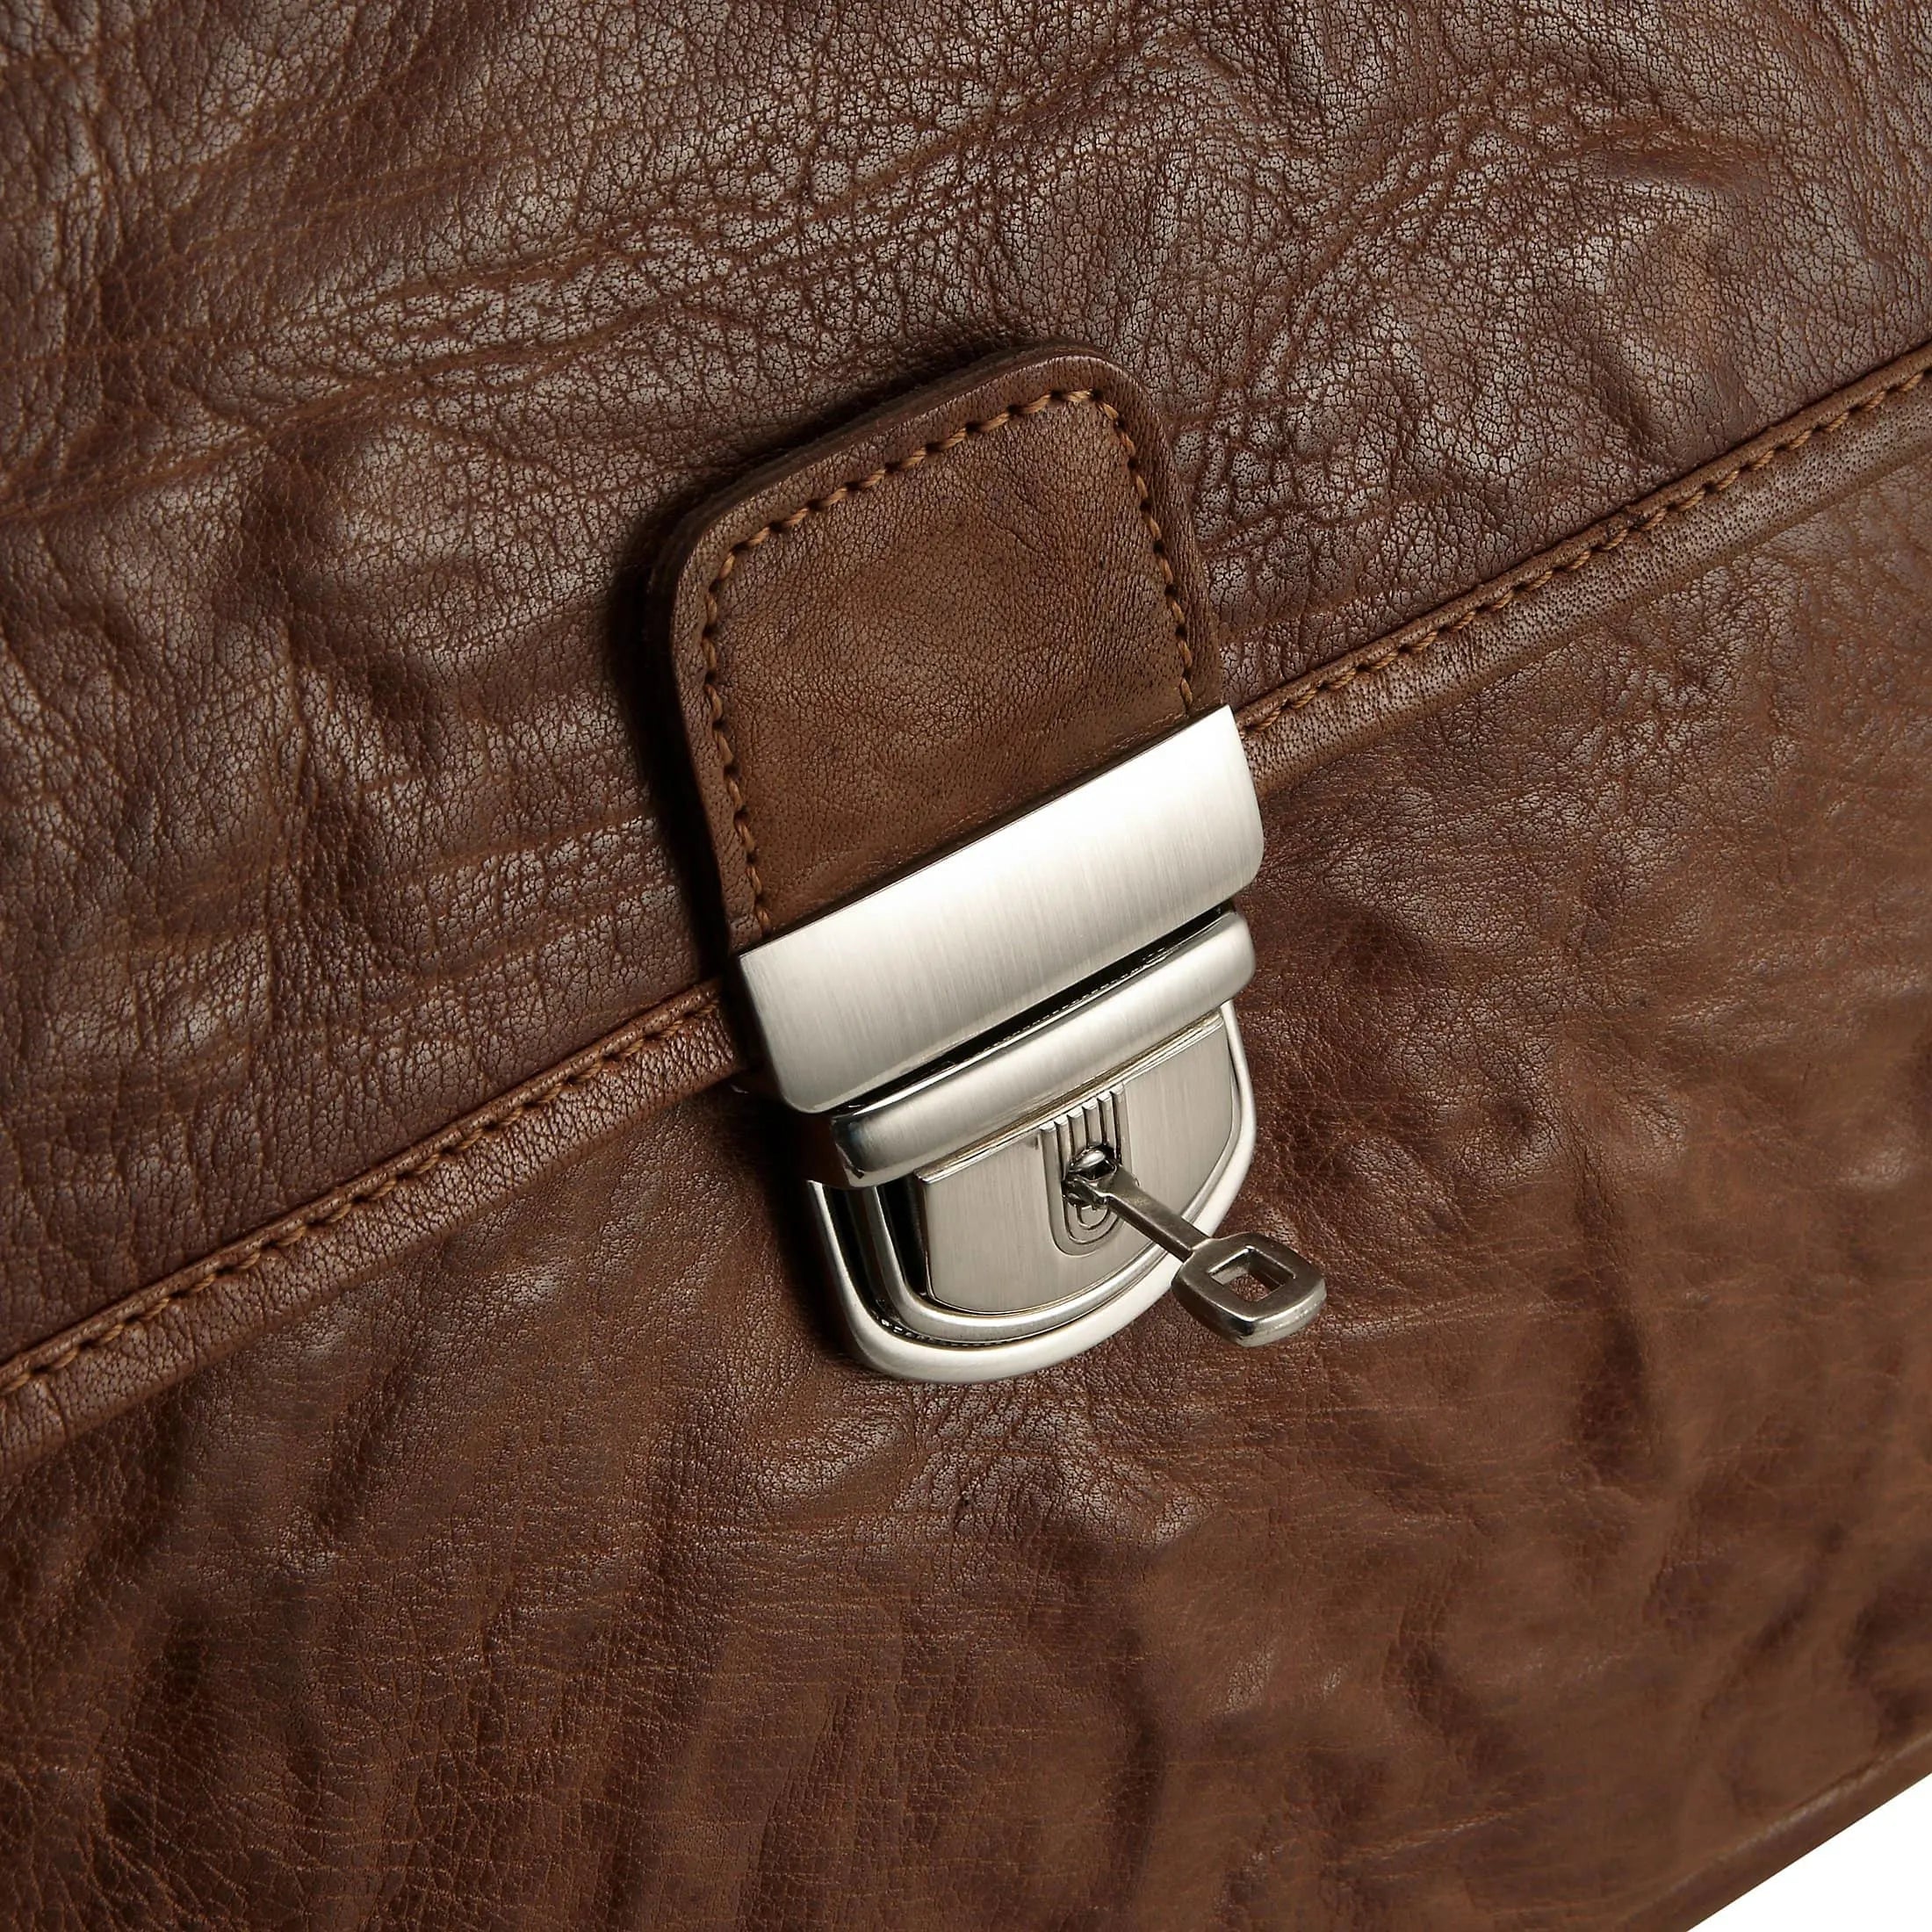 Plevier 600 series briefcase with laptop compartment 40 cm - cognac